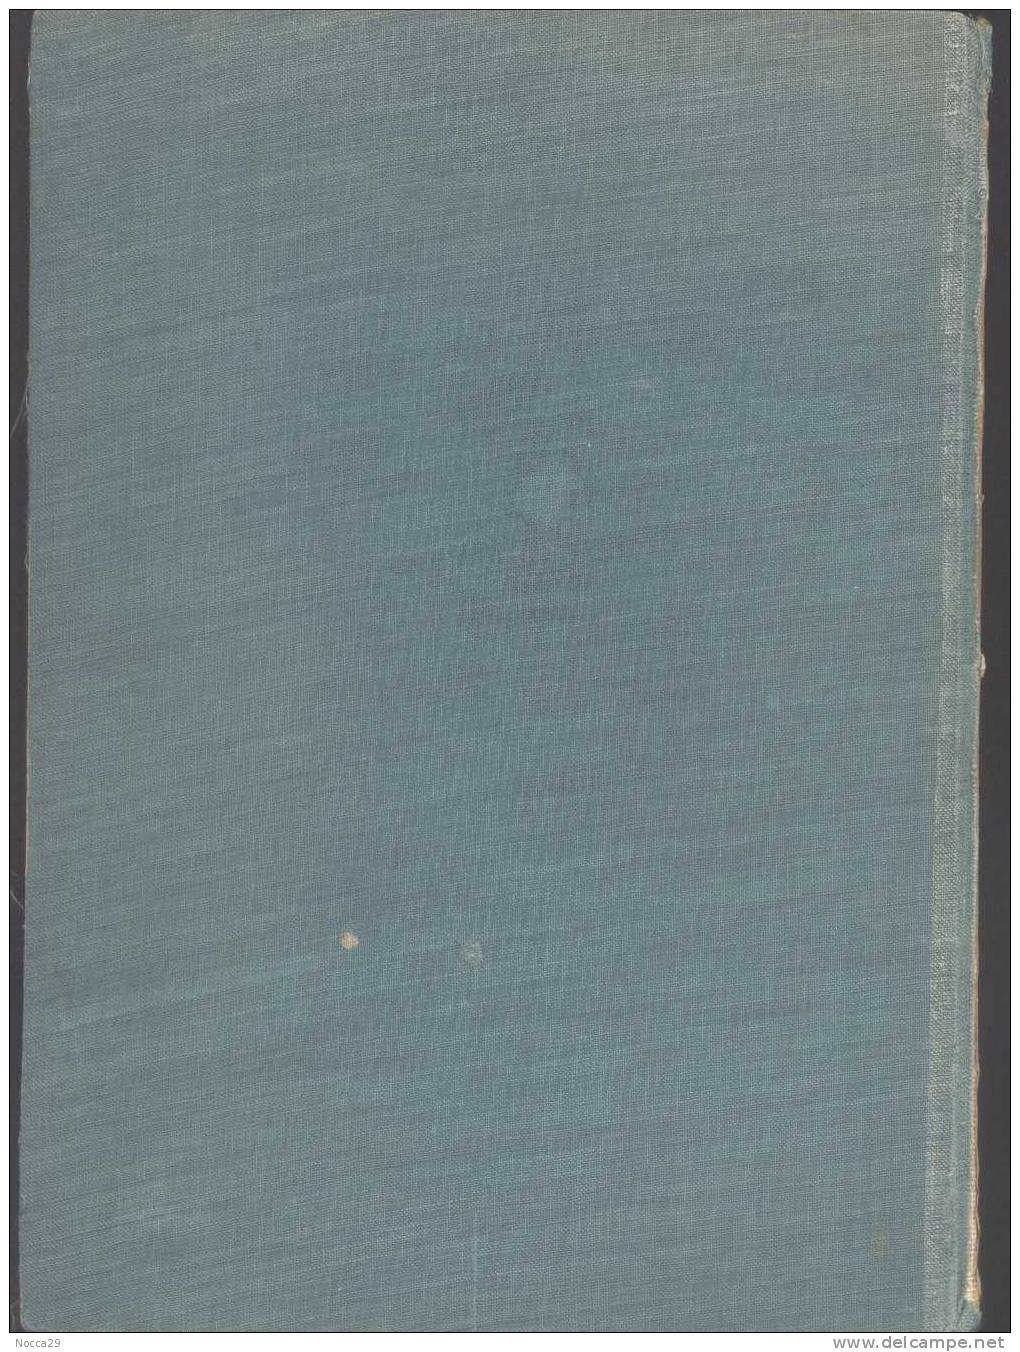 AUF KUNDFAHRT IM JMALAJA - 1937 - SPEDIZIONE SULL'HYMALAIA - ALPINISMO. ORIGINALE! - Biographien & Memoiren